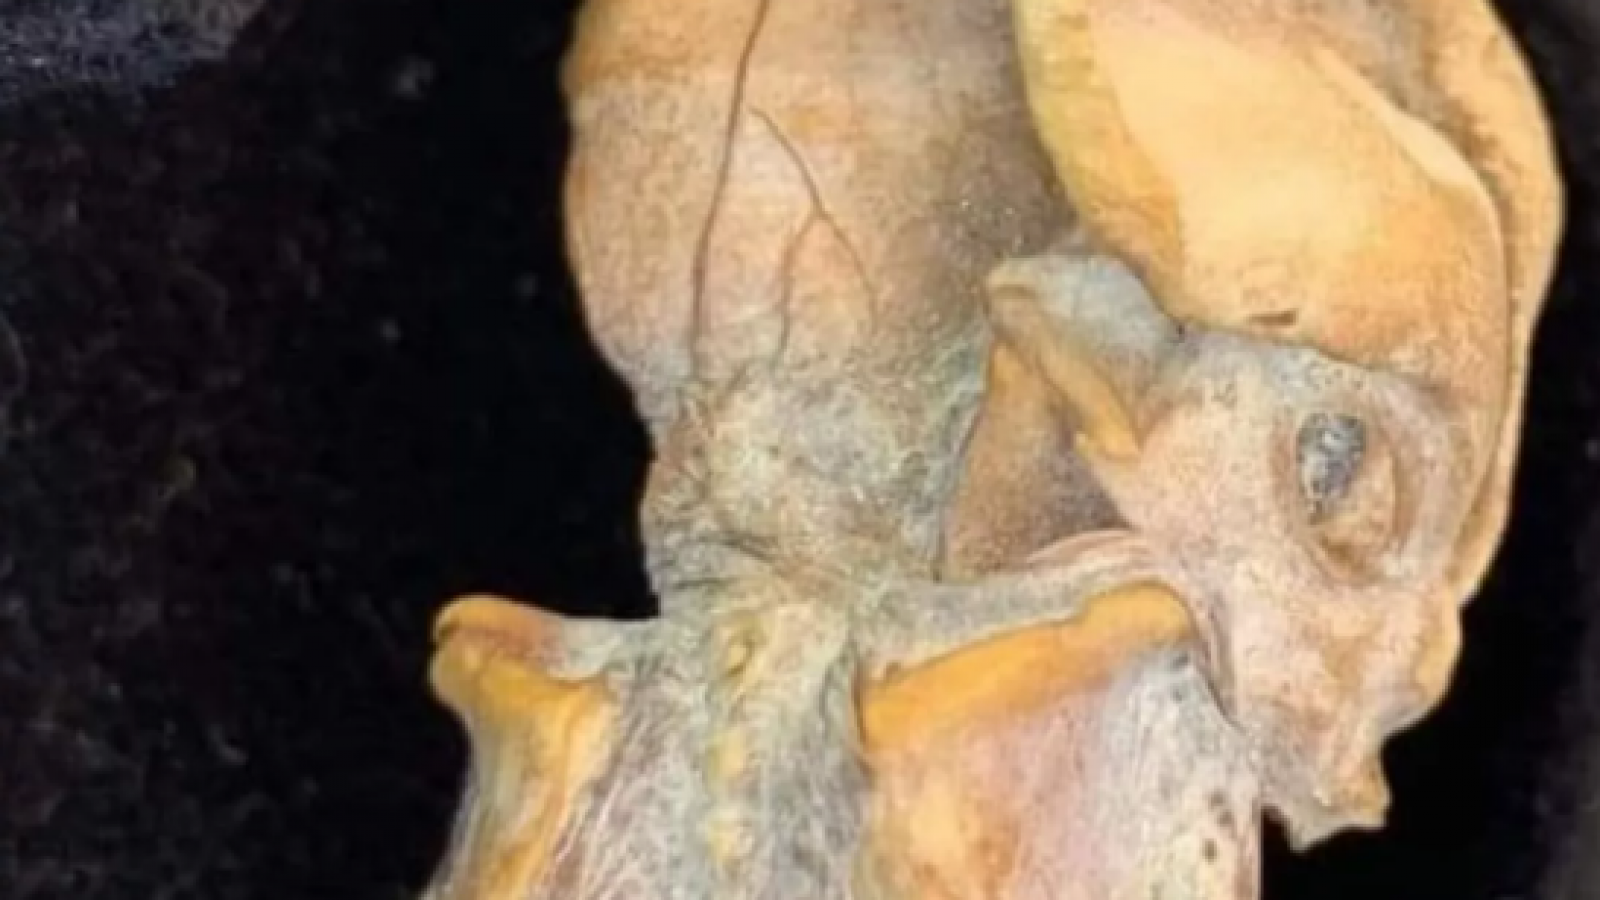 Descubren extraño feto momificado: terorías apuntan a un humano antiguo o un alienígena